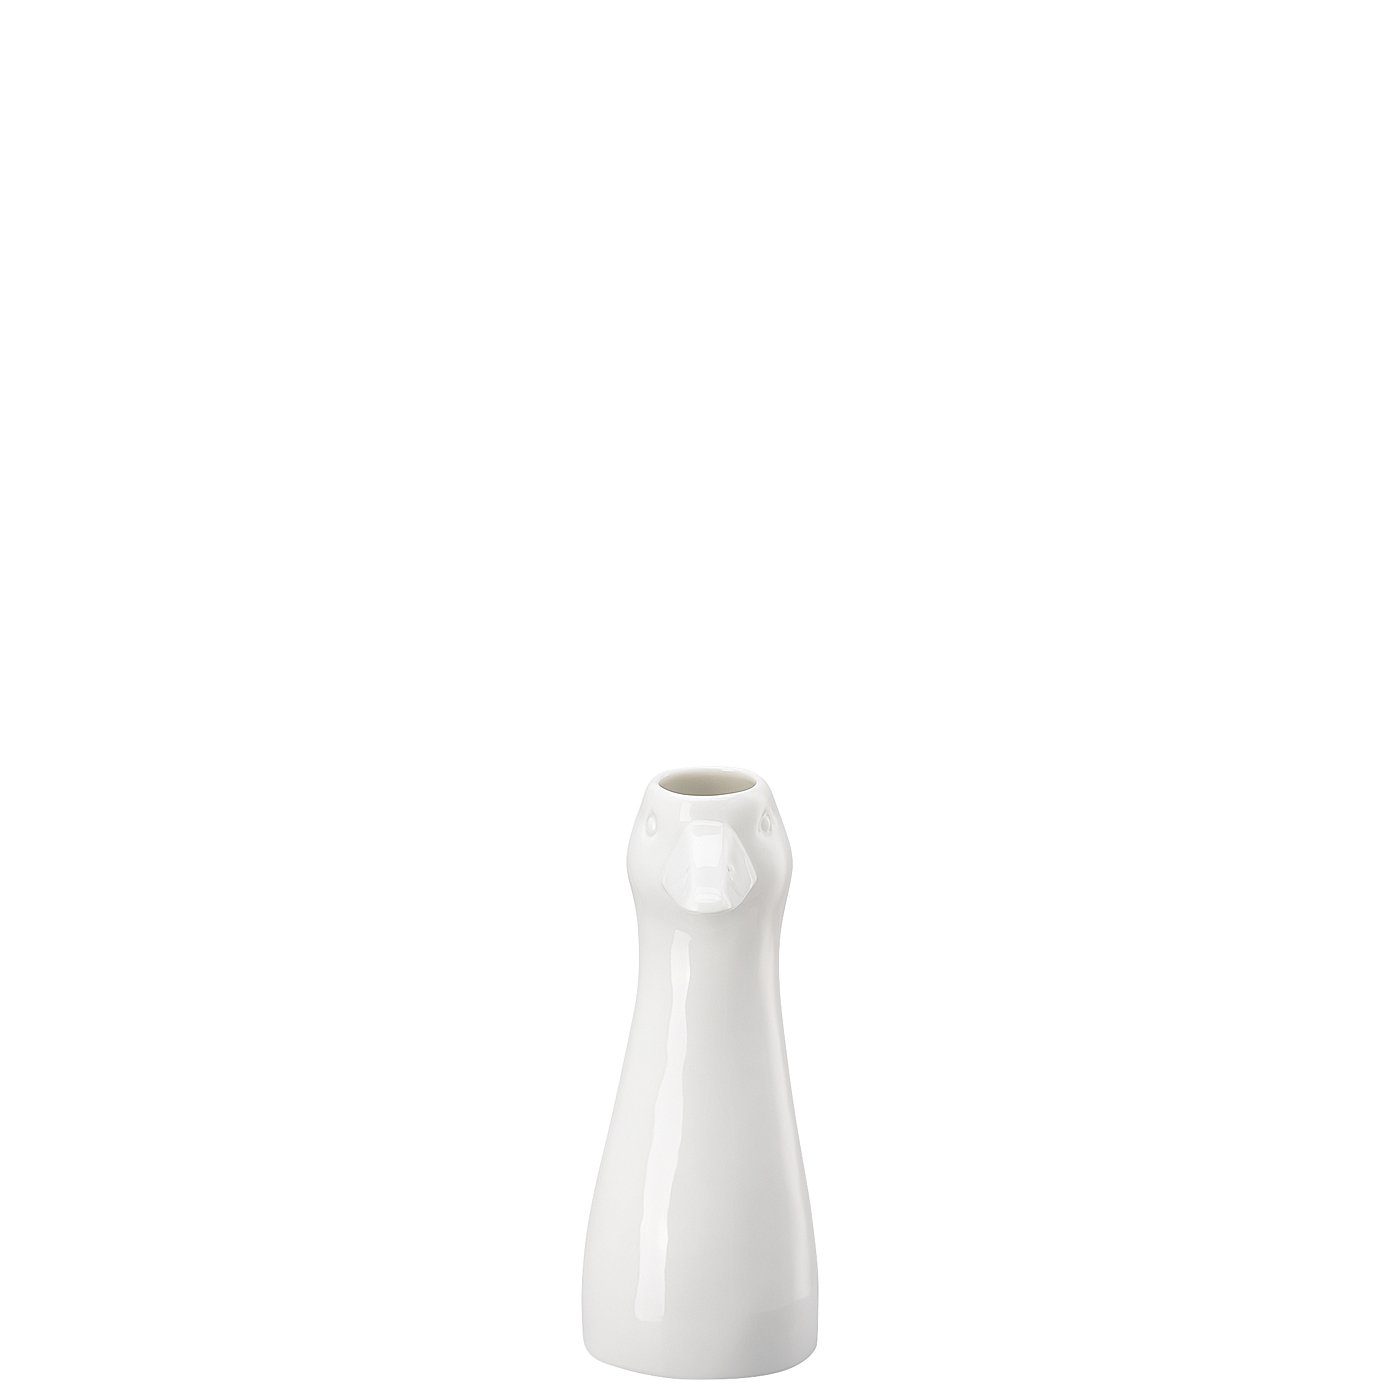 Dekovase Vase 2023 Weiß Sammelkollektion Hutschenreuther Gans cm 14